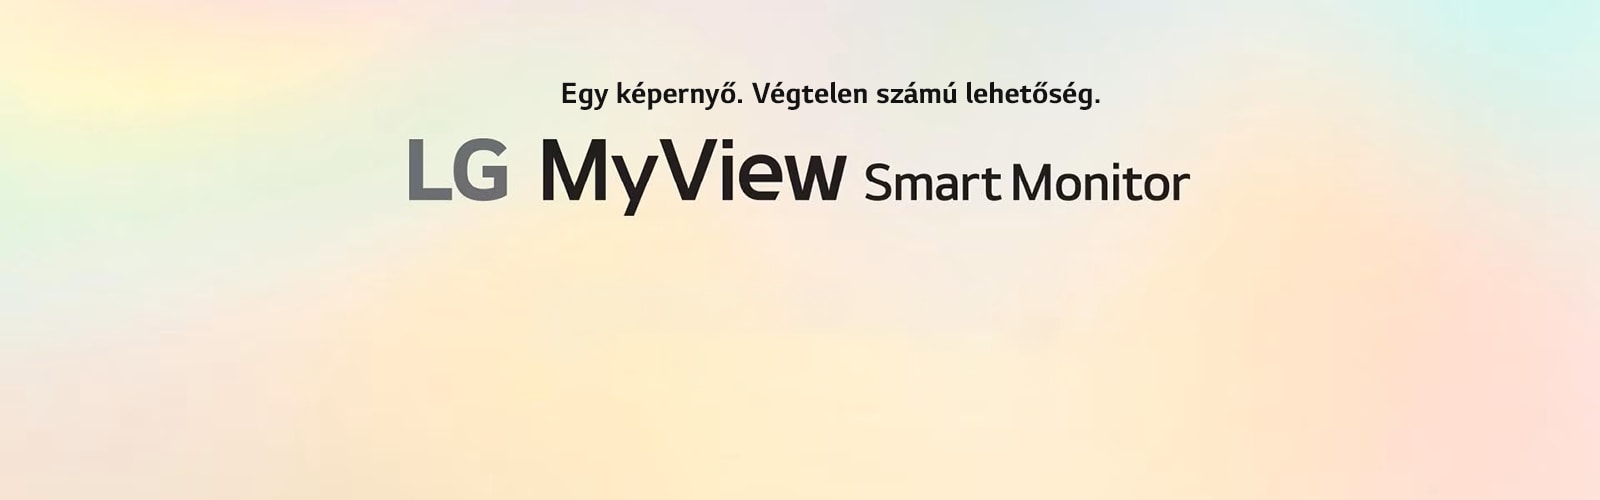 LG MyView Smart Monitor – Saját térben, saját képernyővel.	